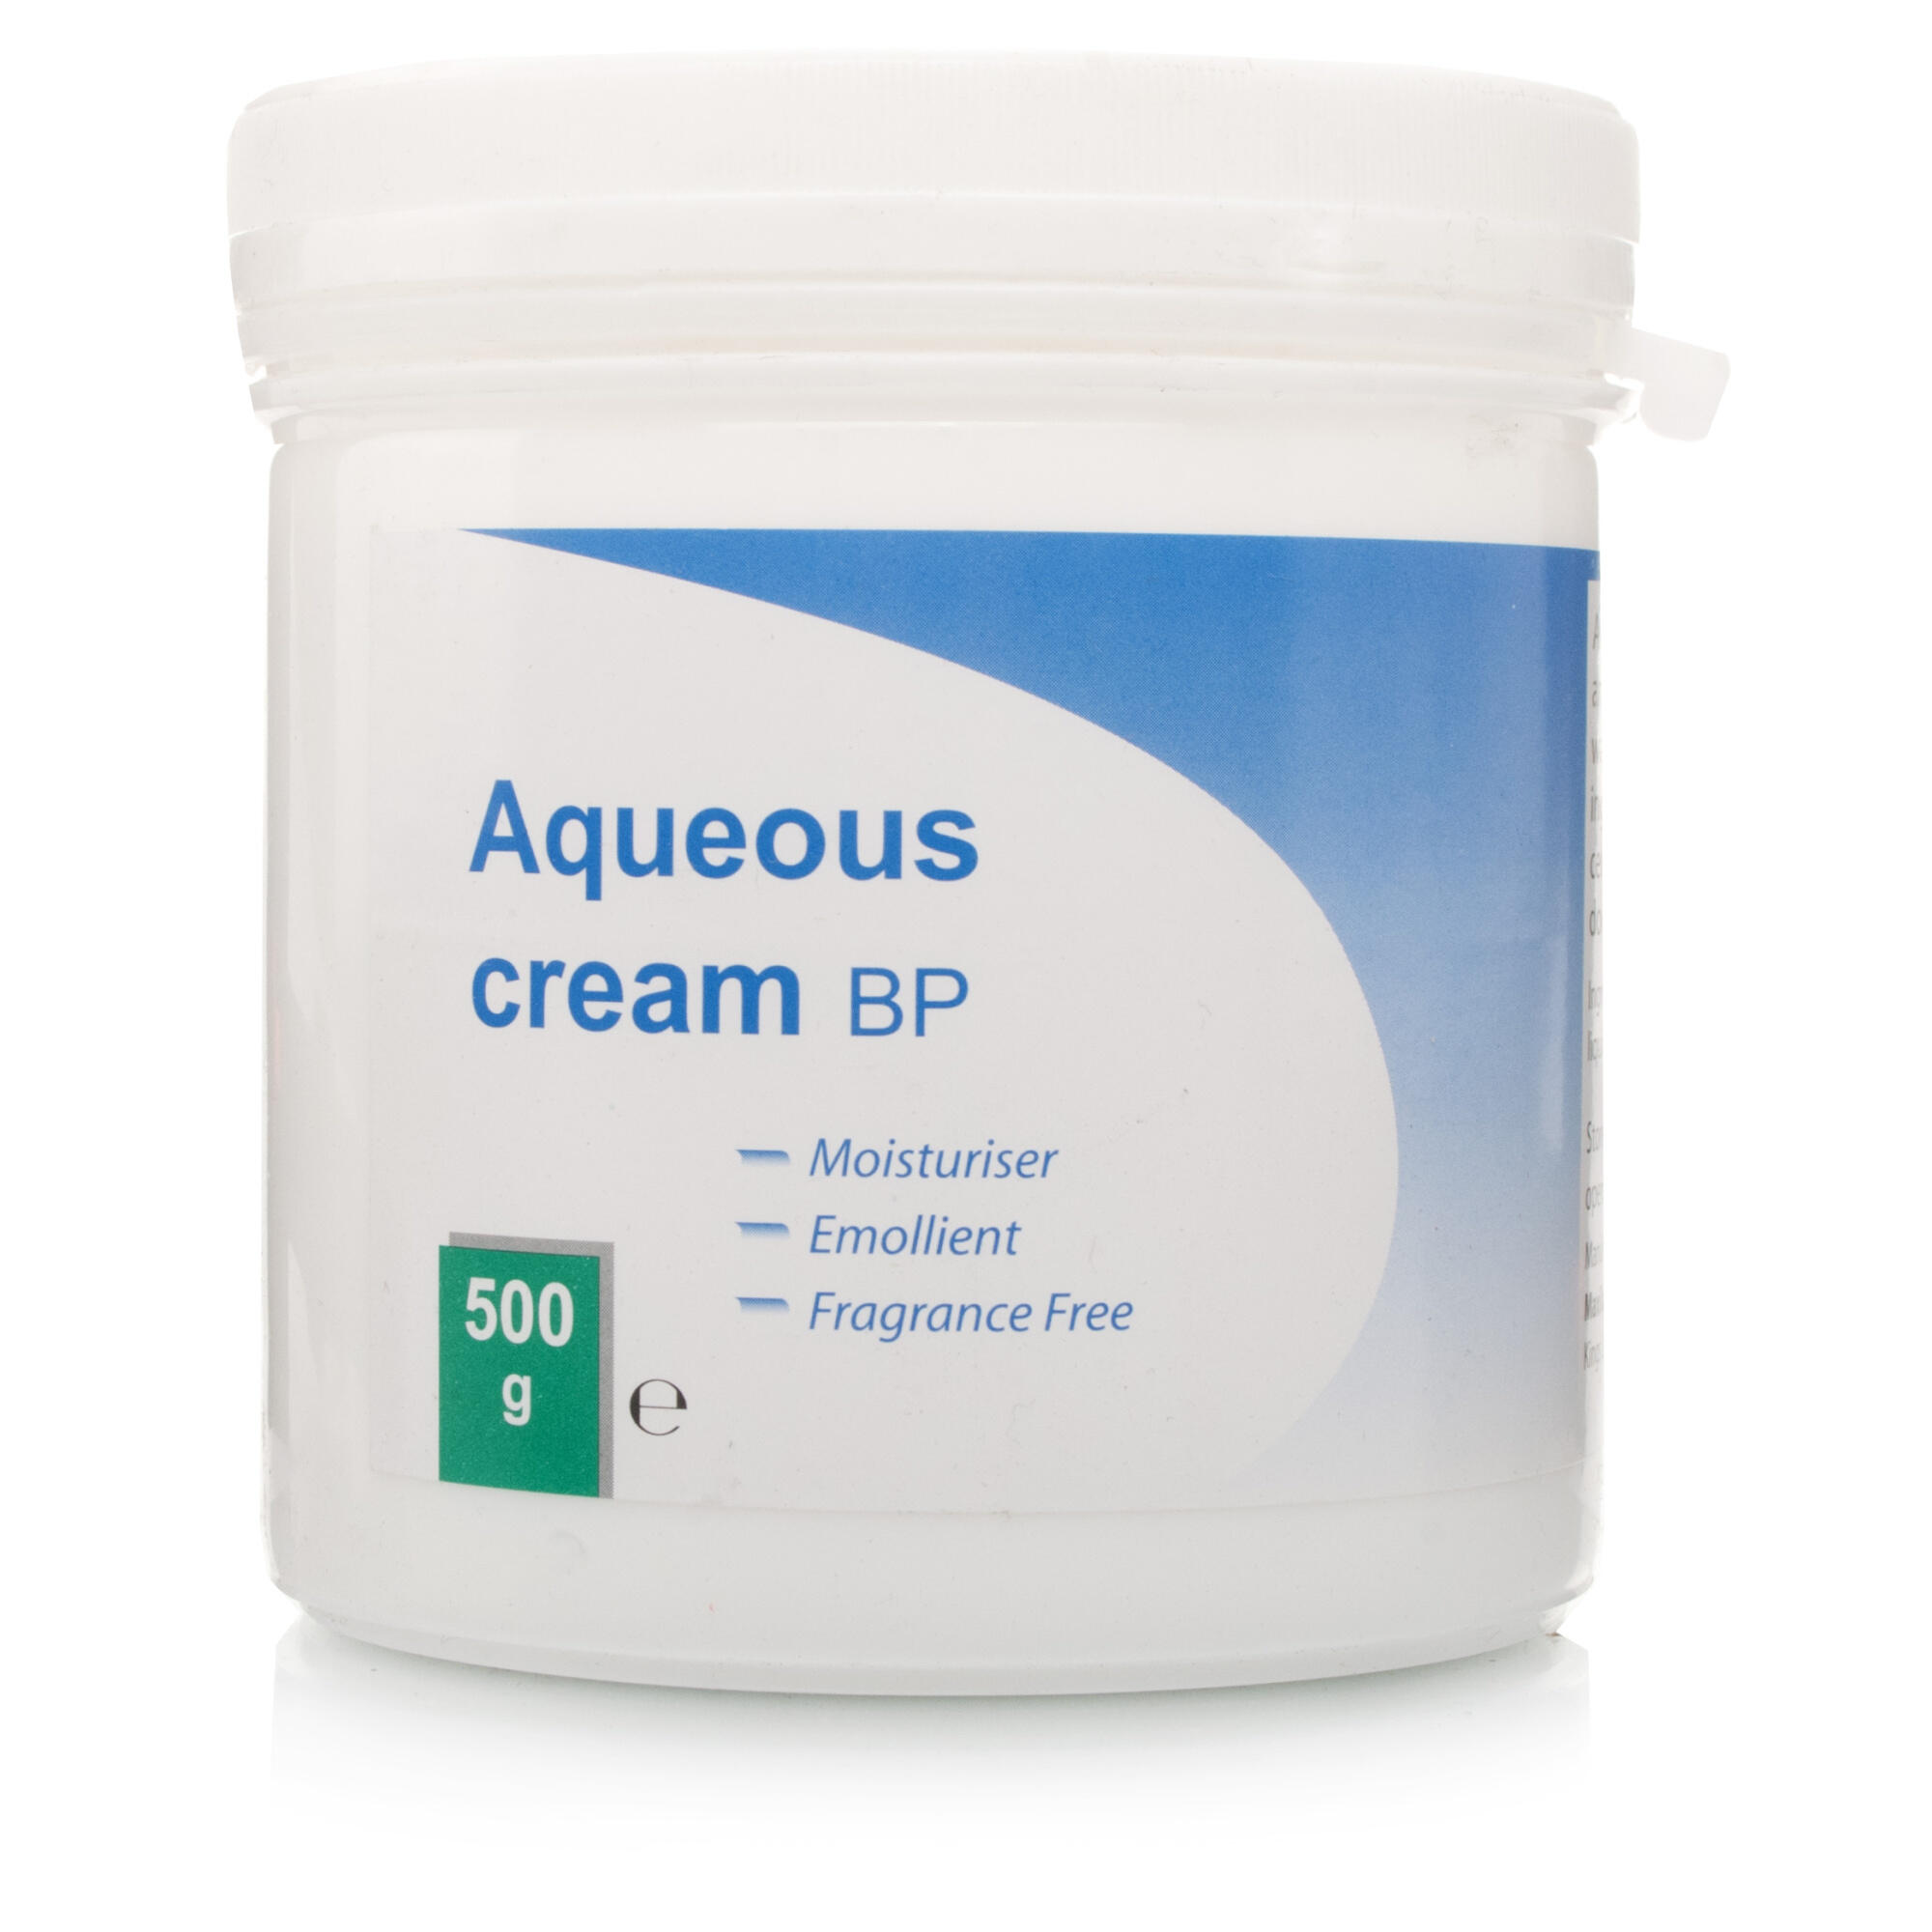 best aqueous cream for eczema